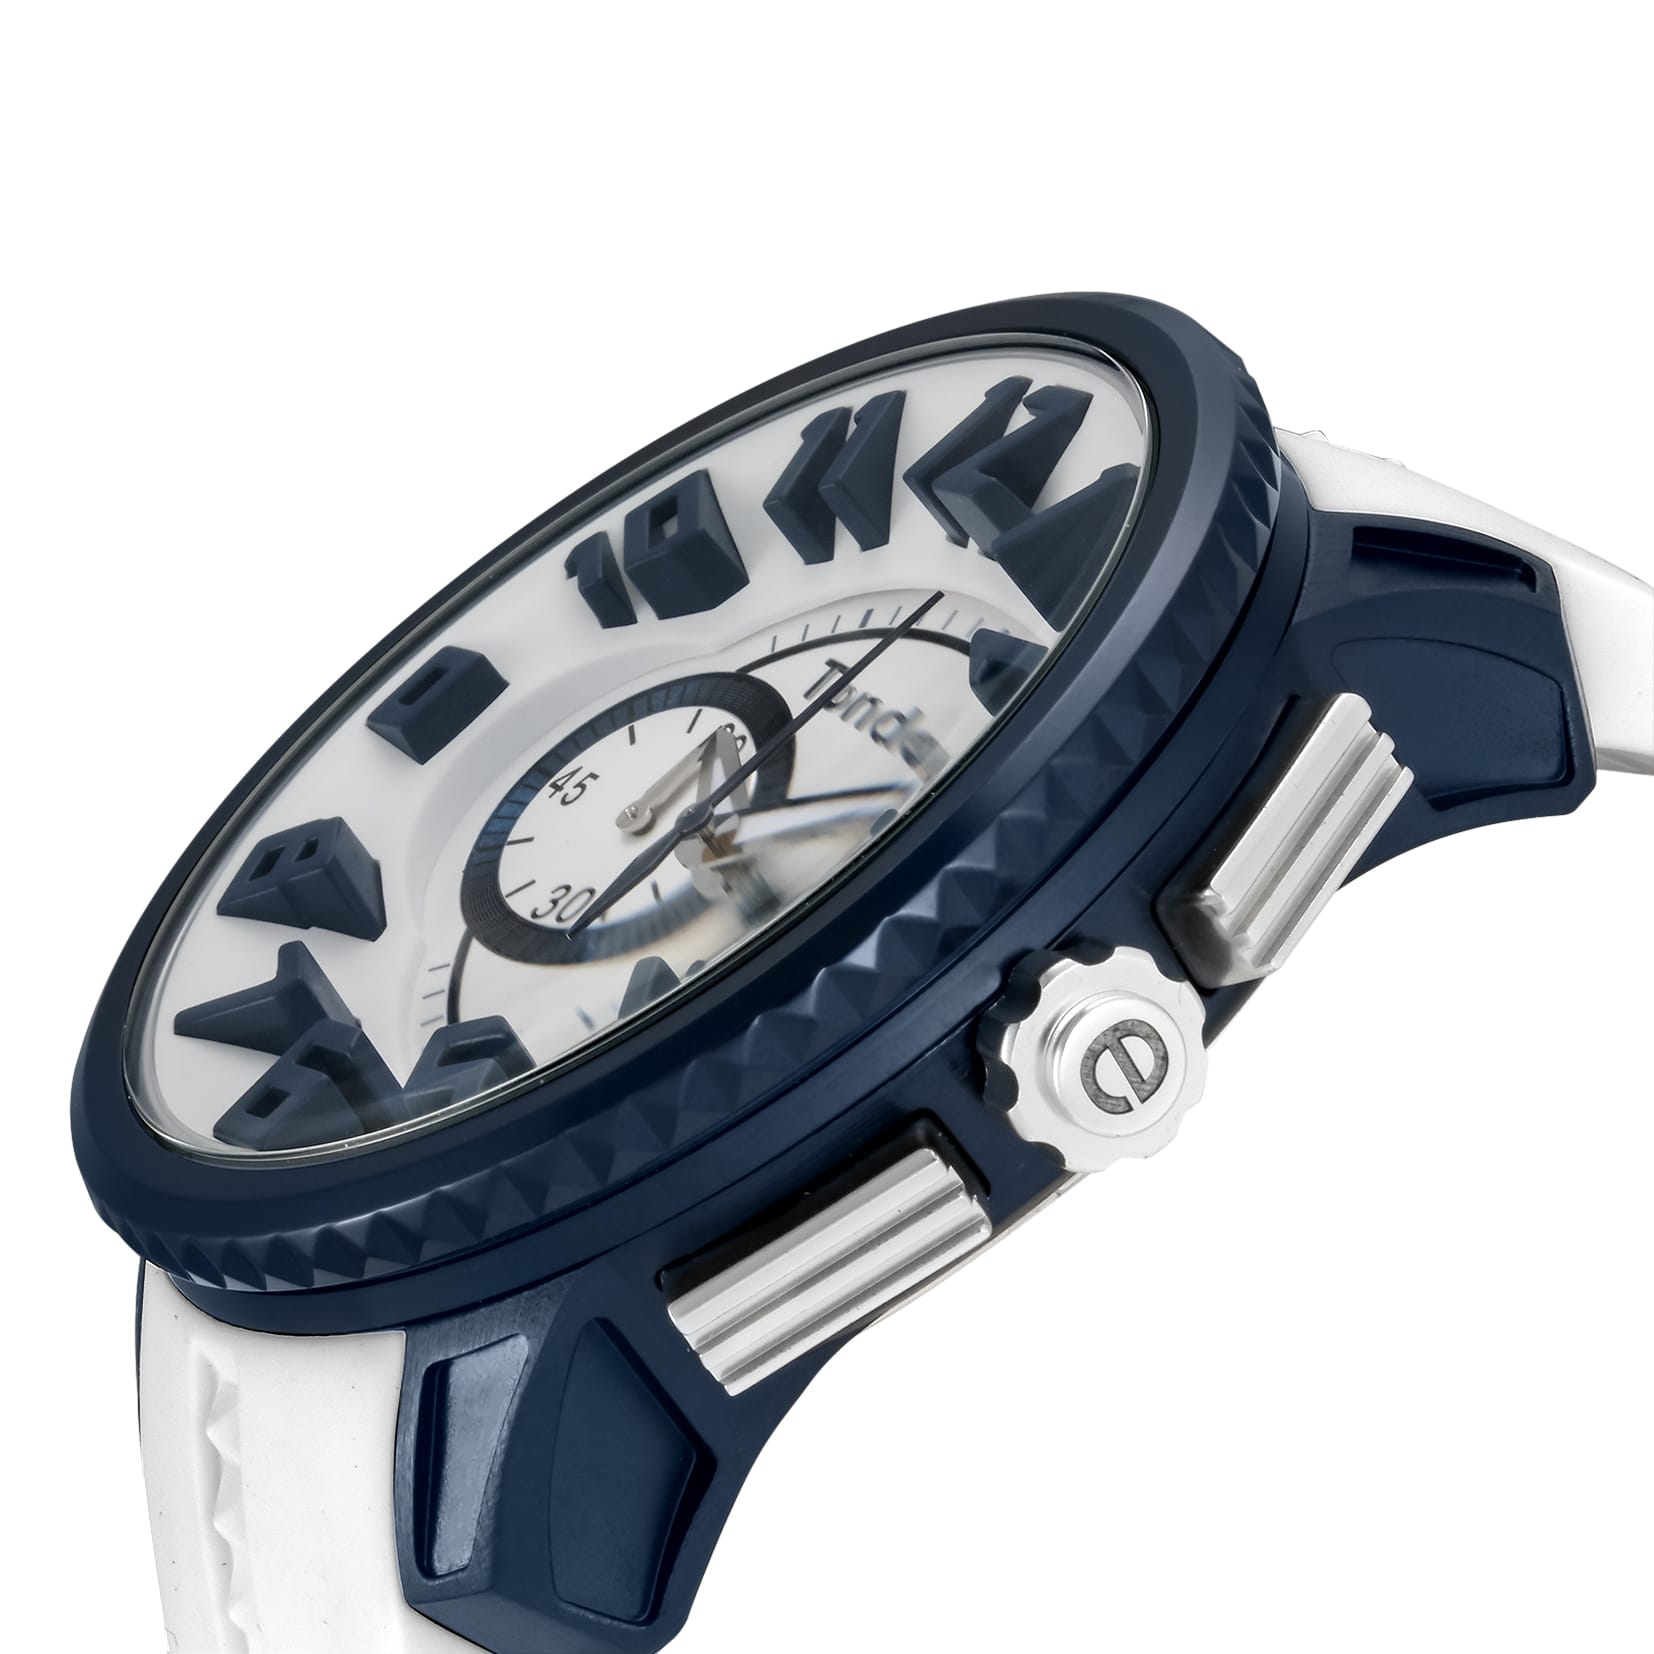 テンデンス TENDENCE  腕時計 ユニセックス TY146001 アルテックガリバー